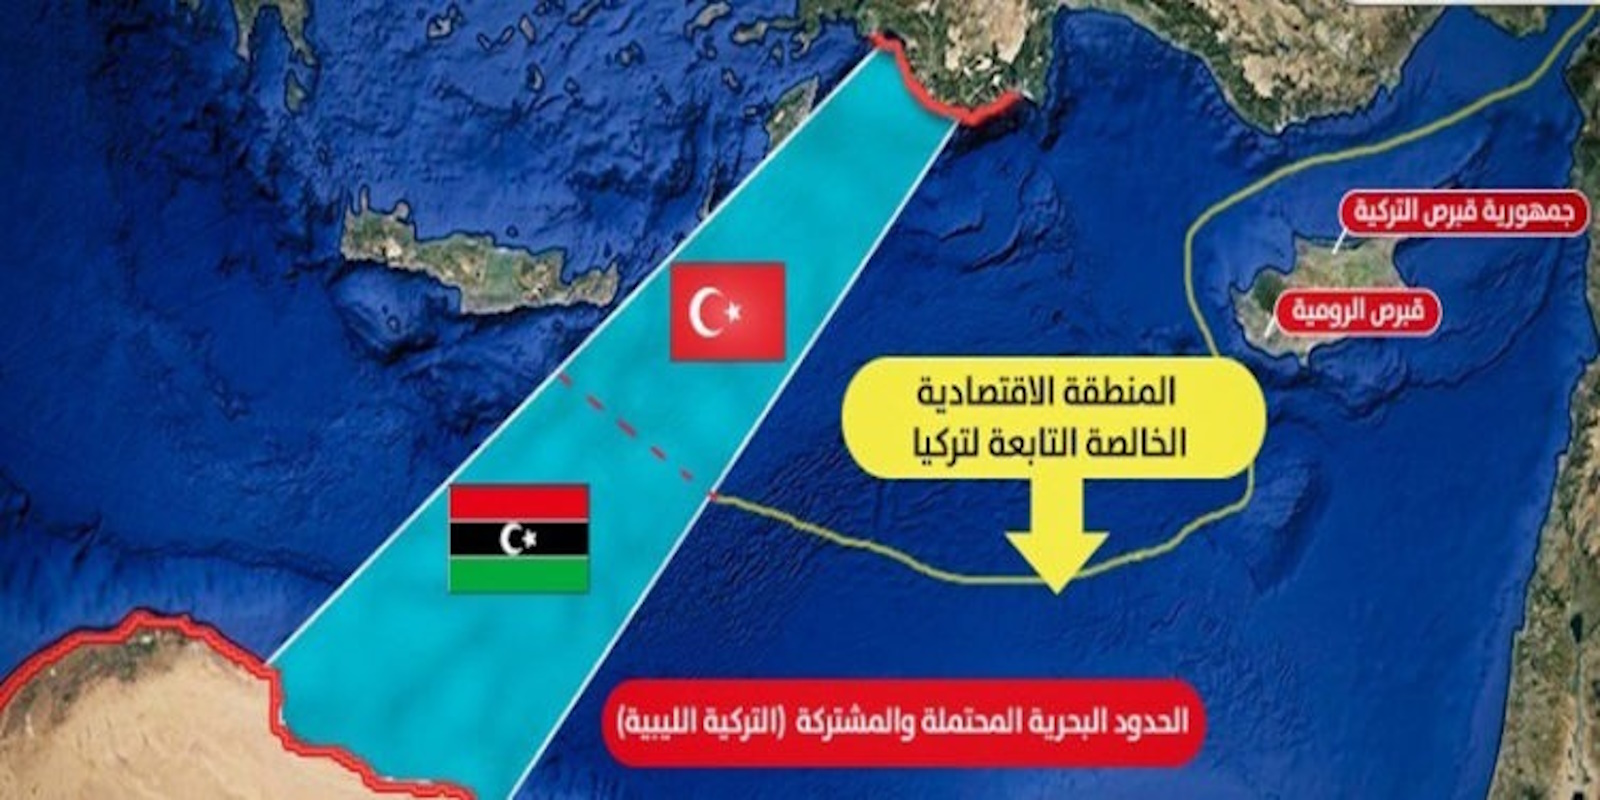 Αυτή είναι η επιστολή της Ελλάδας στον ΟΗΕ για την ανακήρυξη συνορεύουσας ζώνης από τη Λιβύη